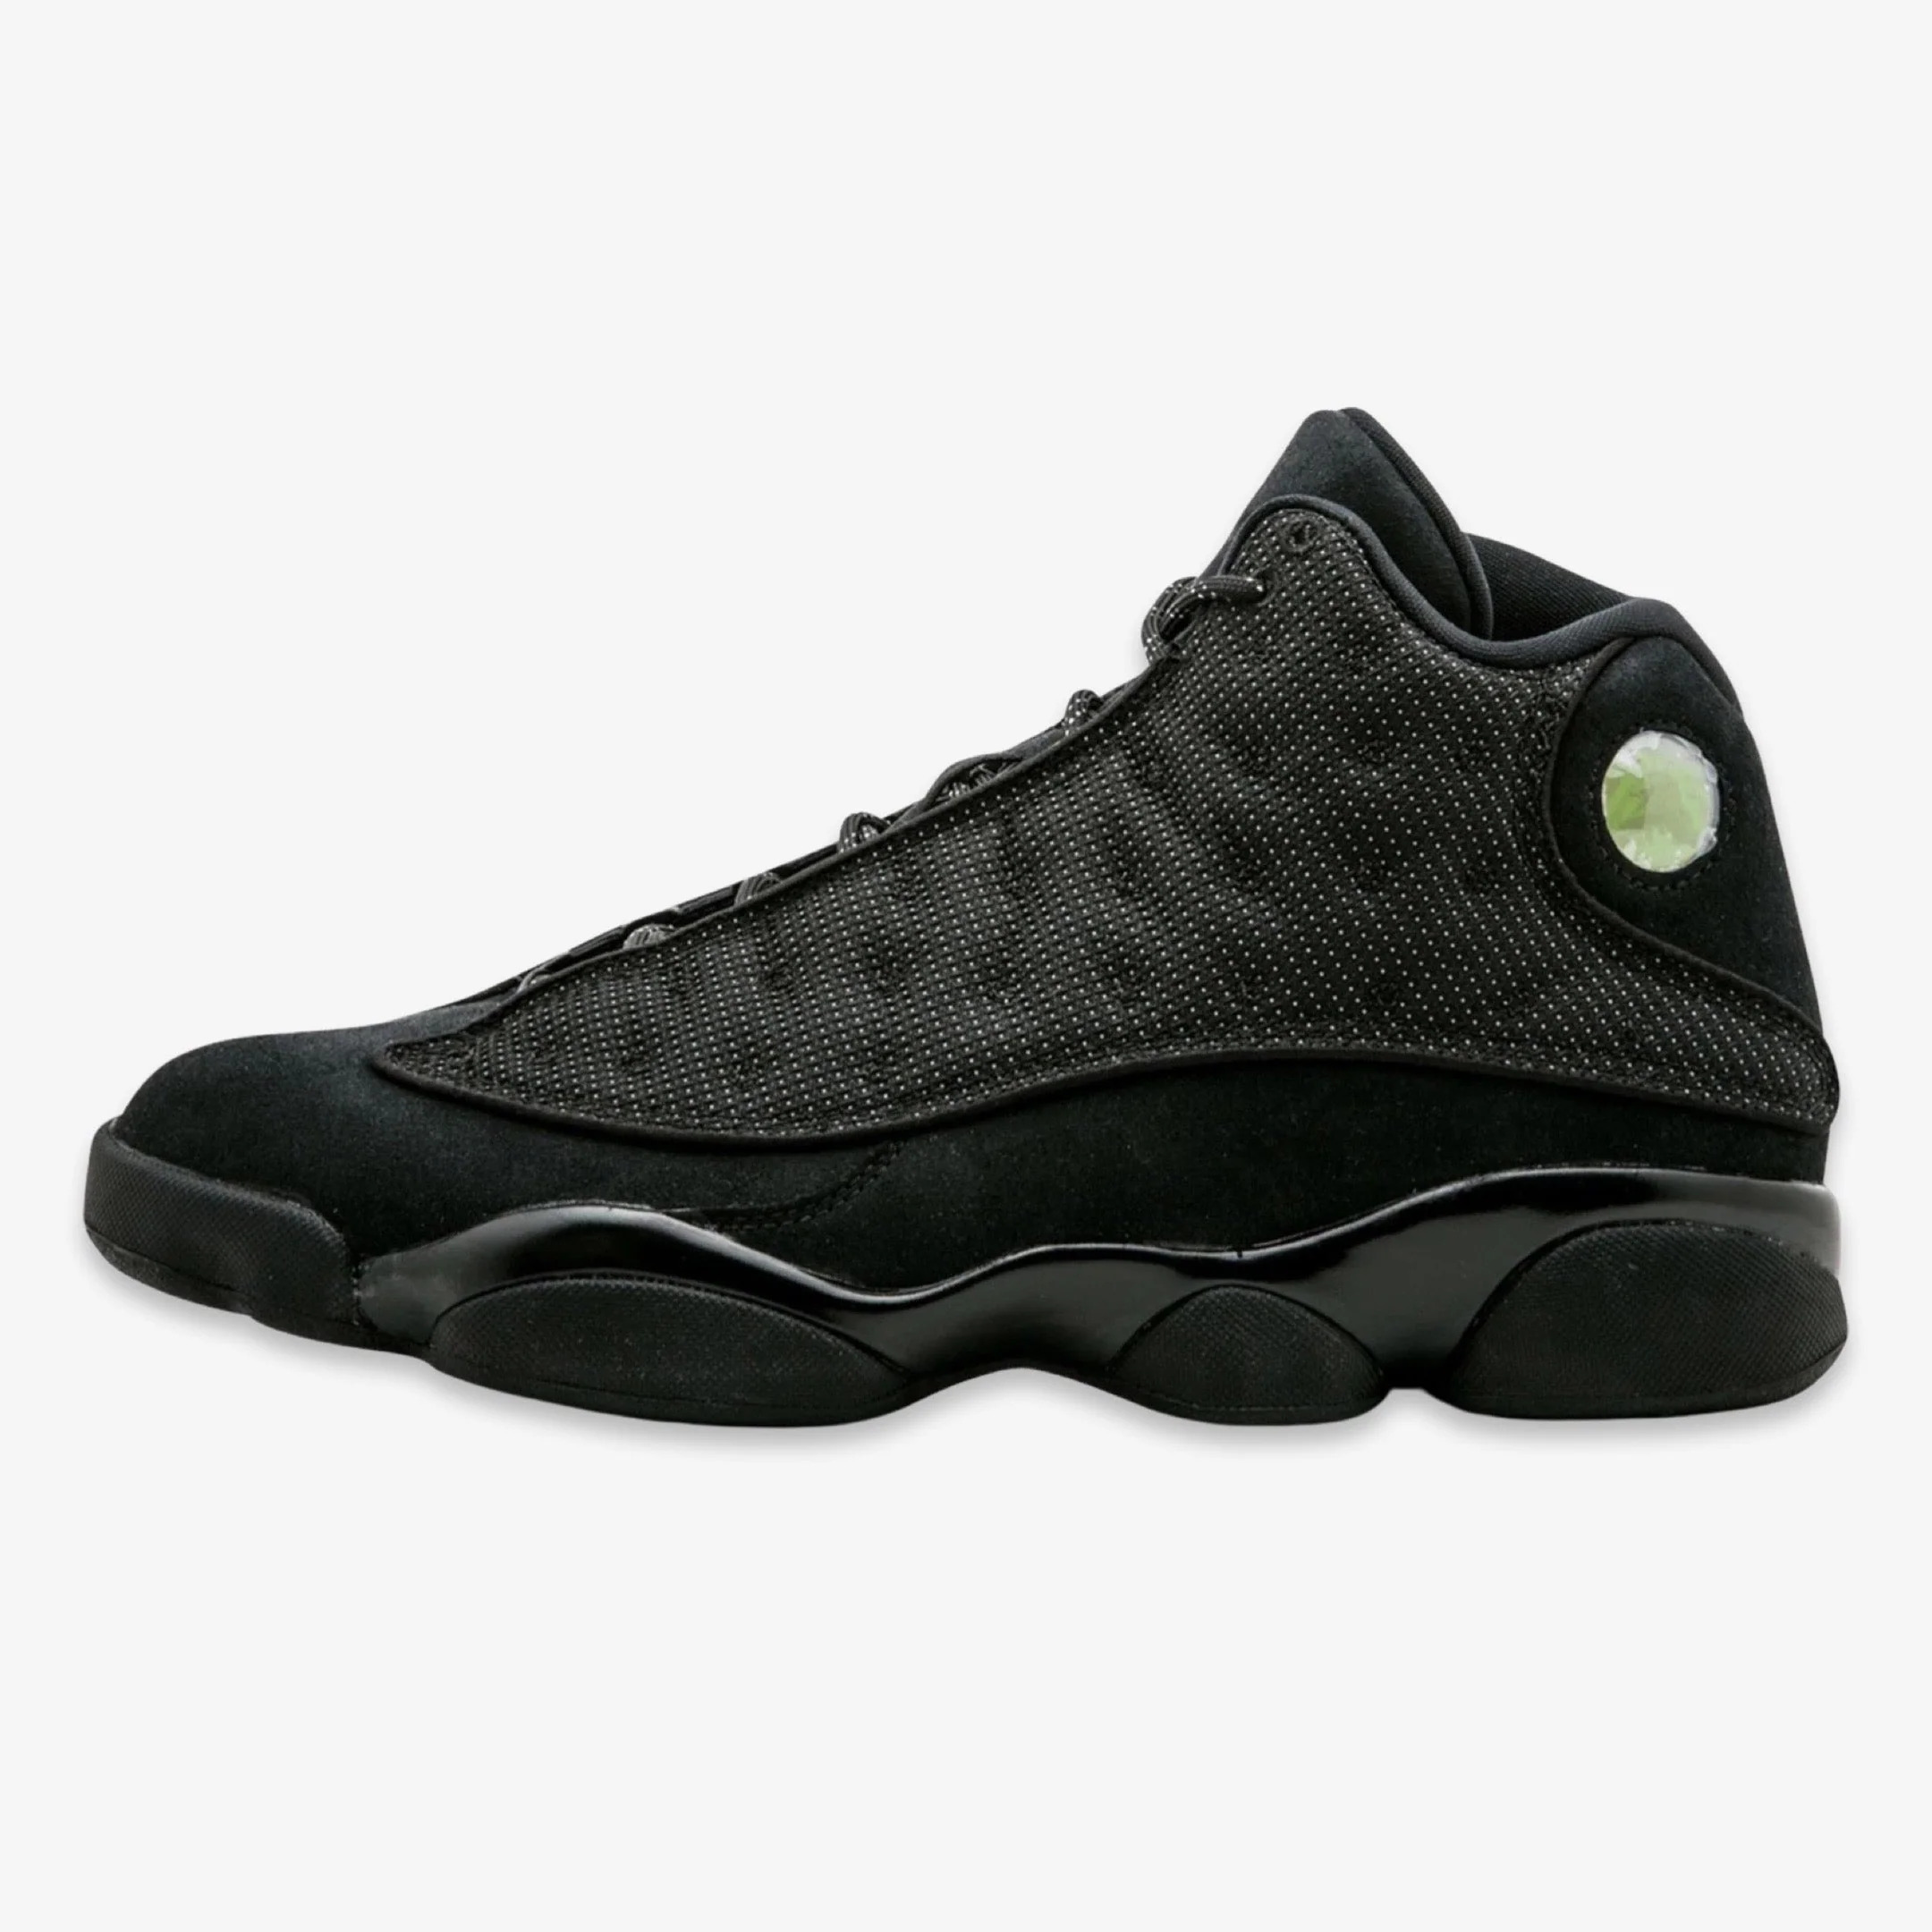 Nike Mens Air Jordan 13 Retro "Black Cat" Black/Anthracite 414571-011 - image 1 of 3